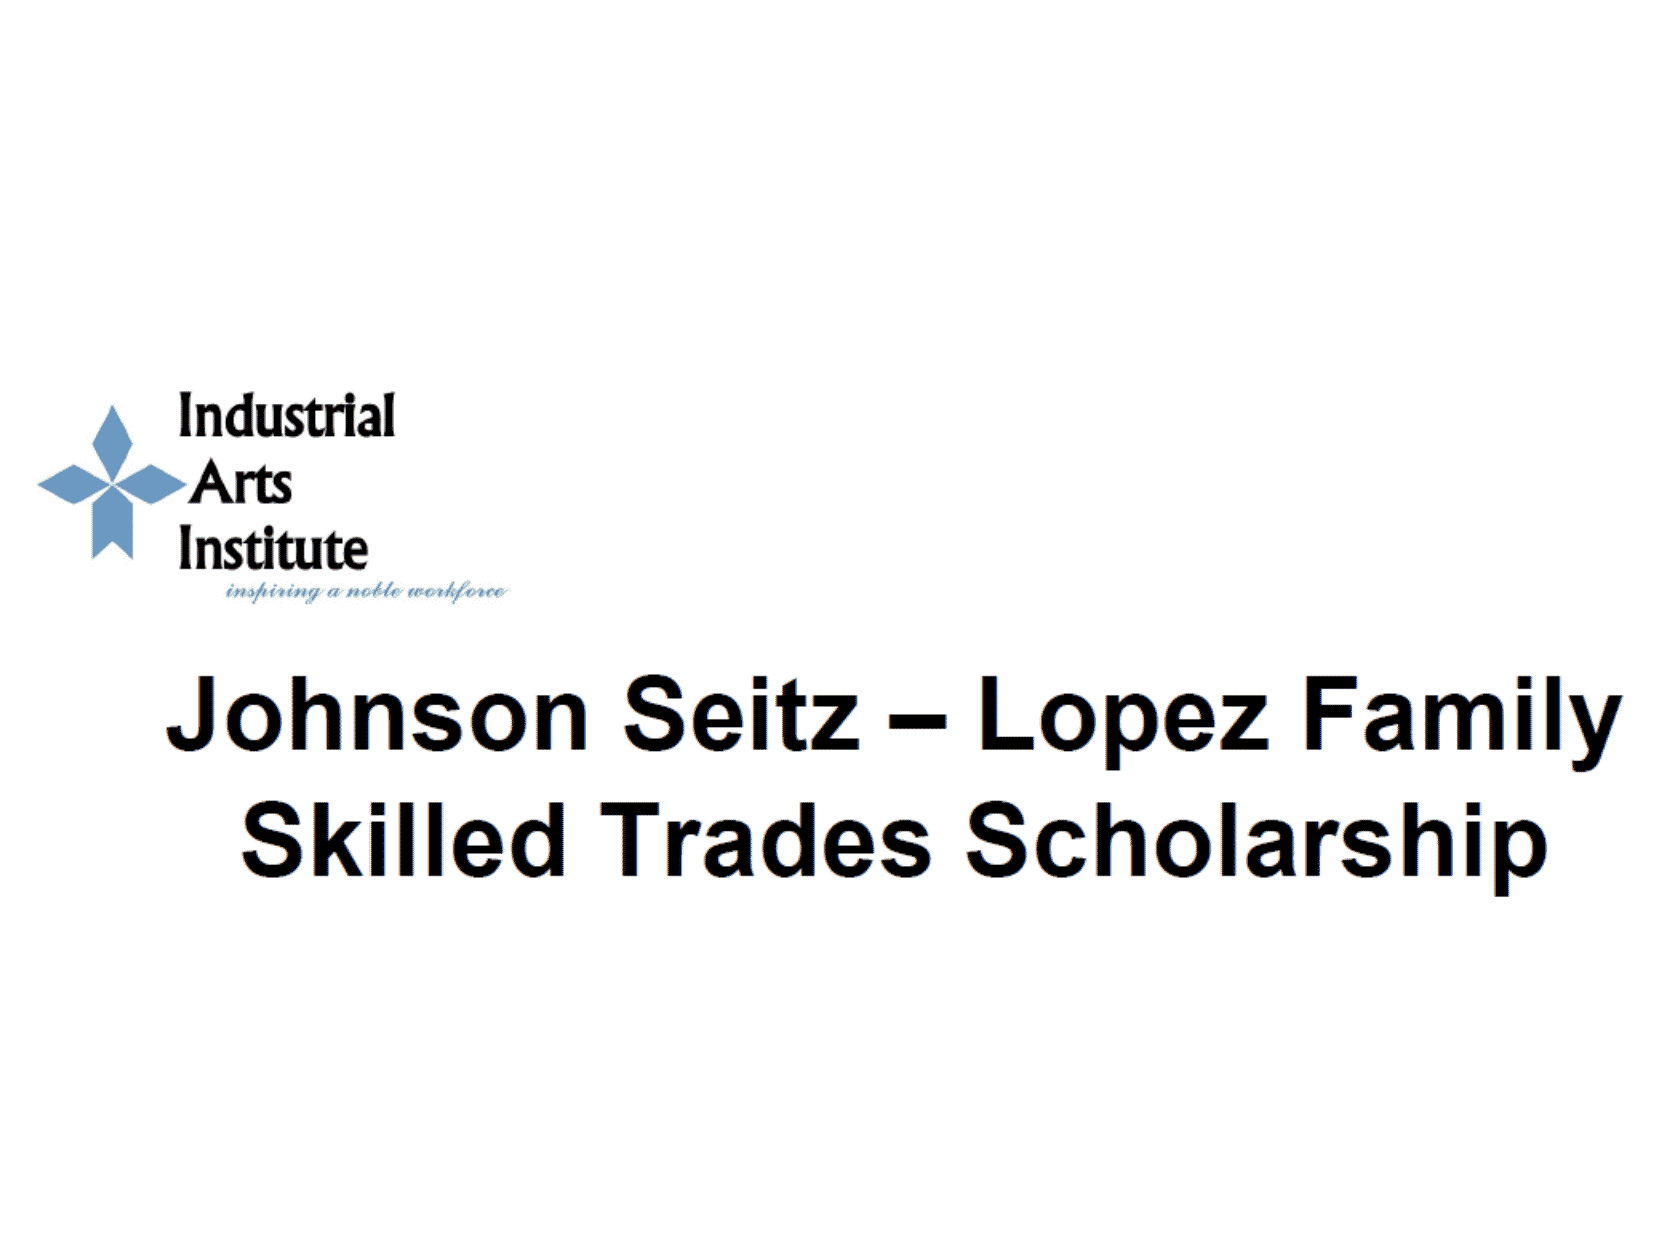 Johnson Seitz-Lopez Family Skilled Trades Scholarship